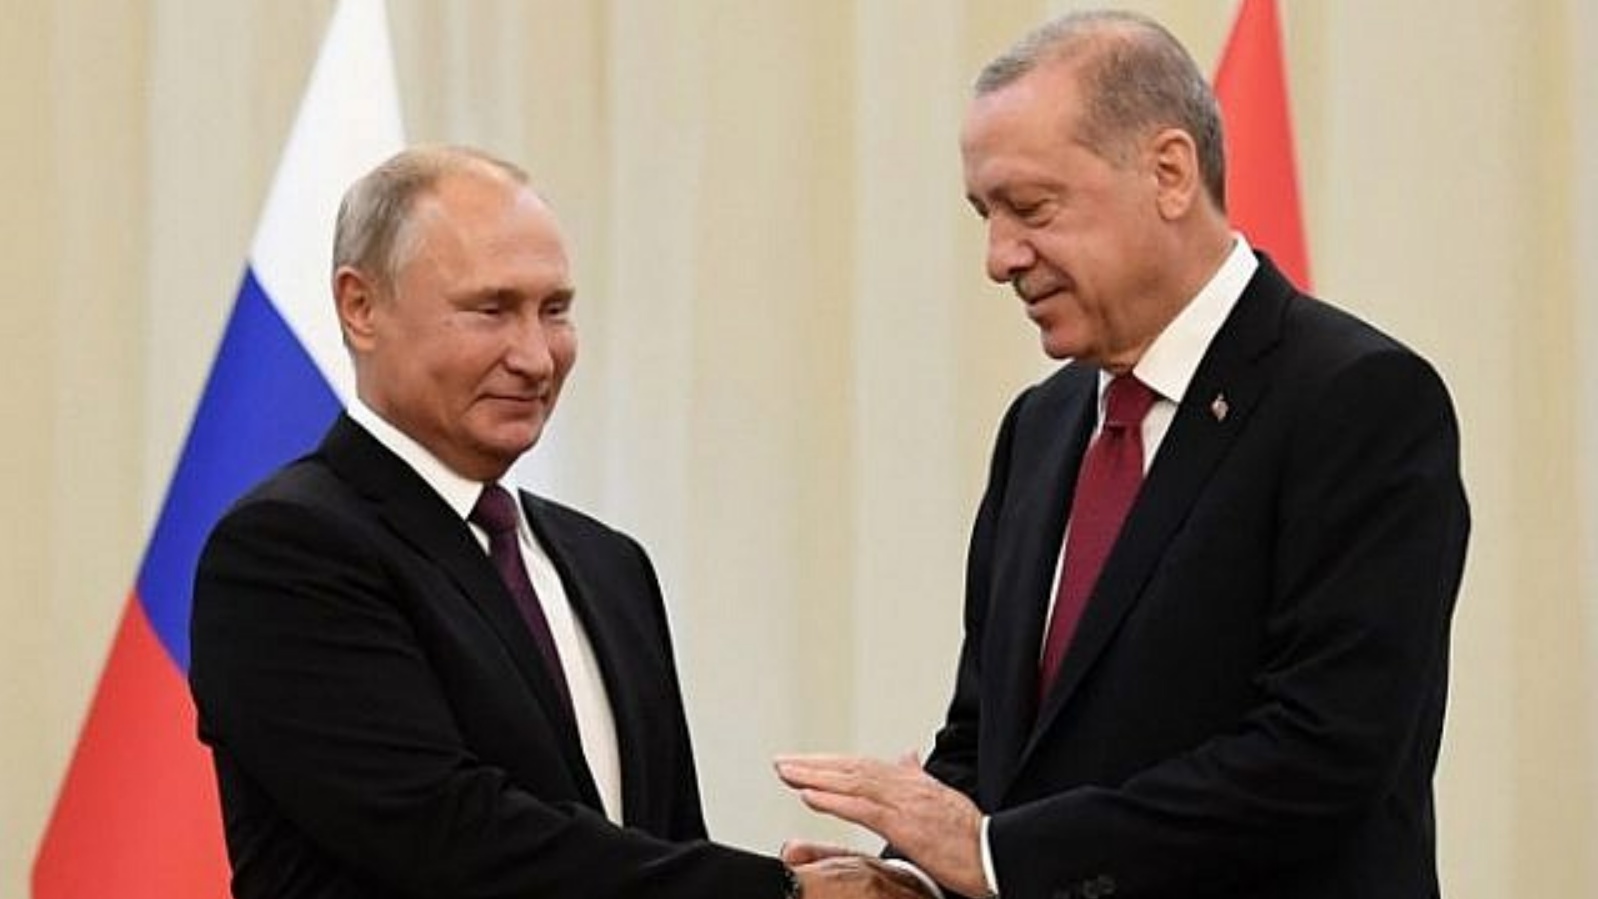 الرئيس الروسي فلاديمير بوتين (إلى اليسار) يصافح نظيره التركي رجب طيب أردوغان